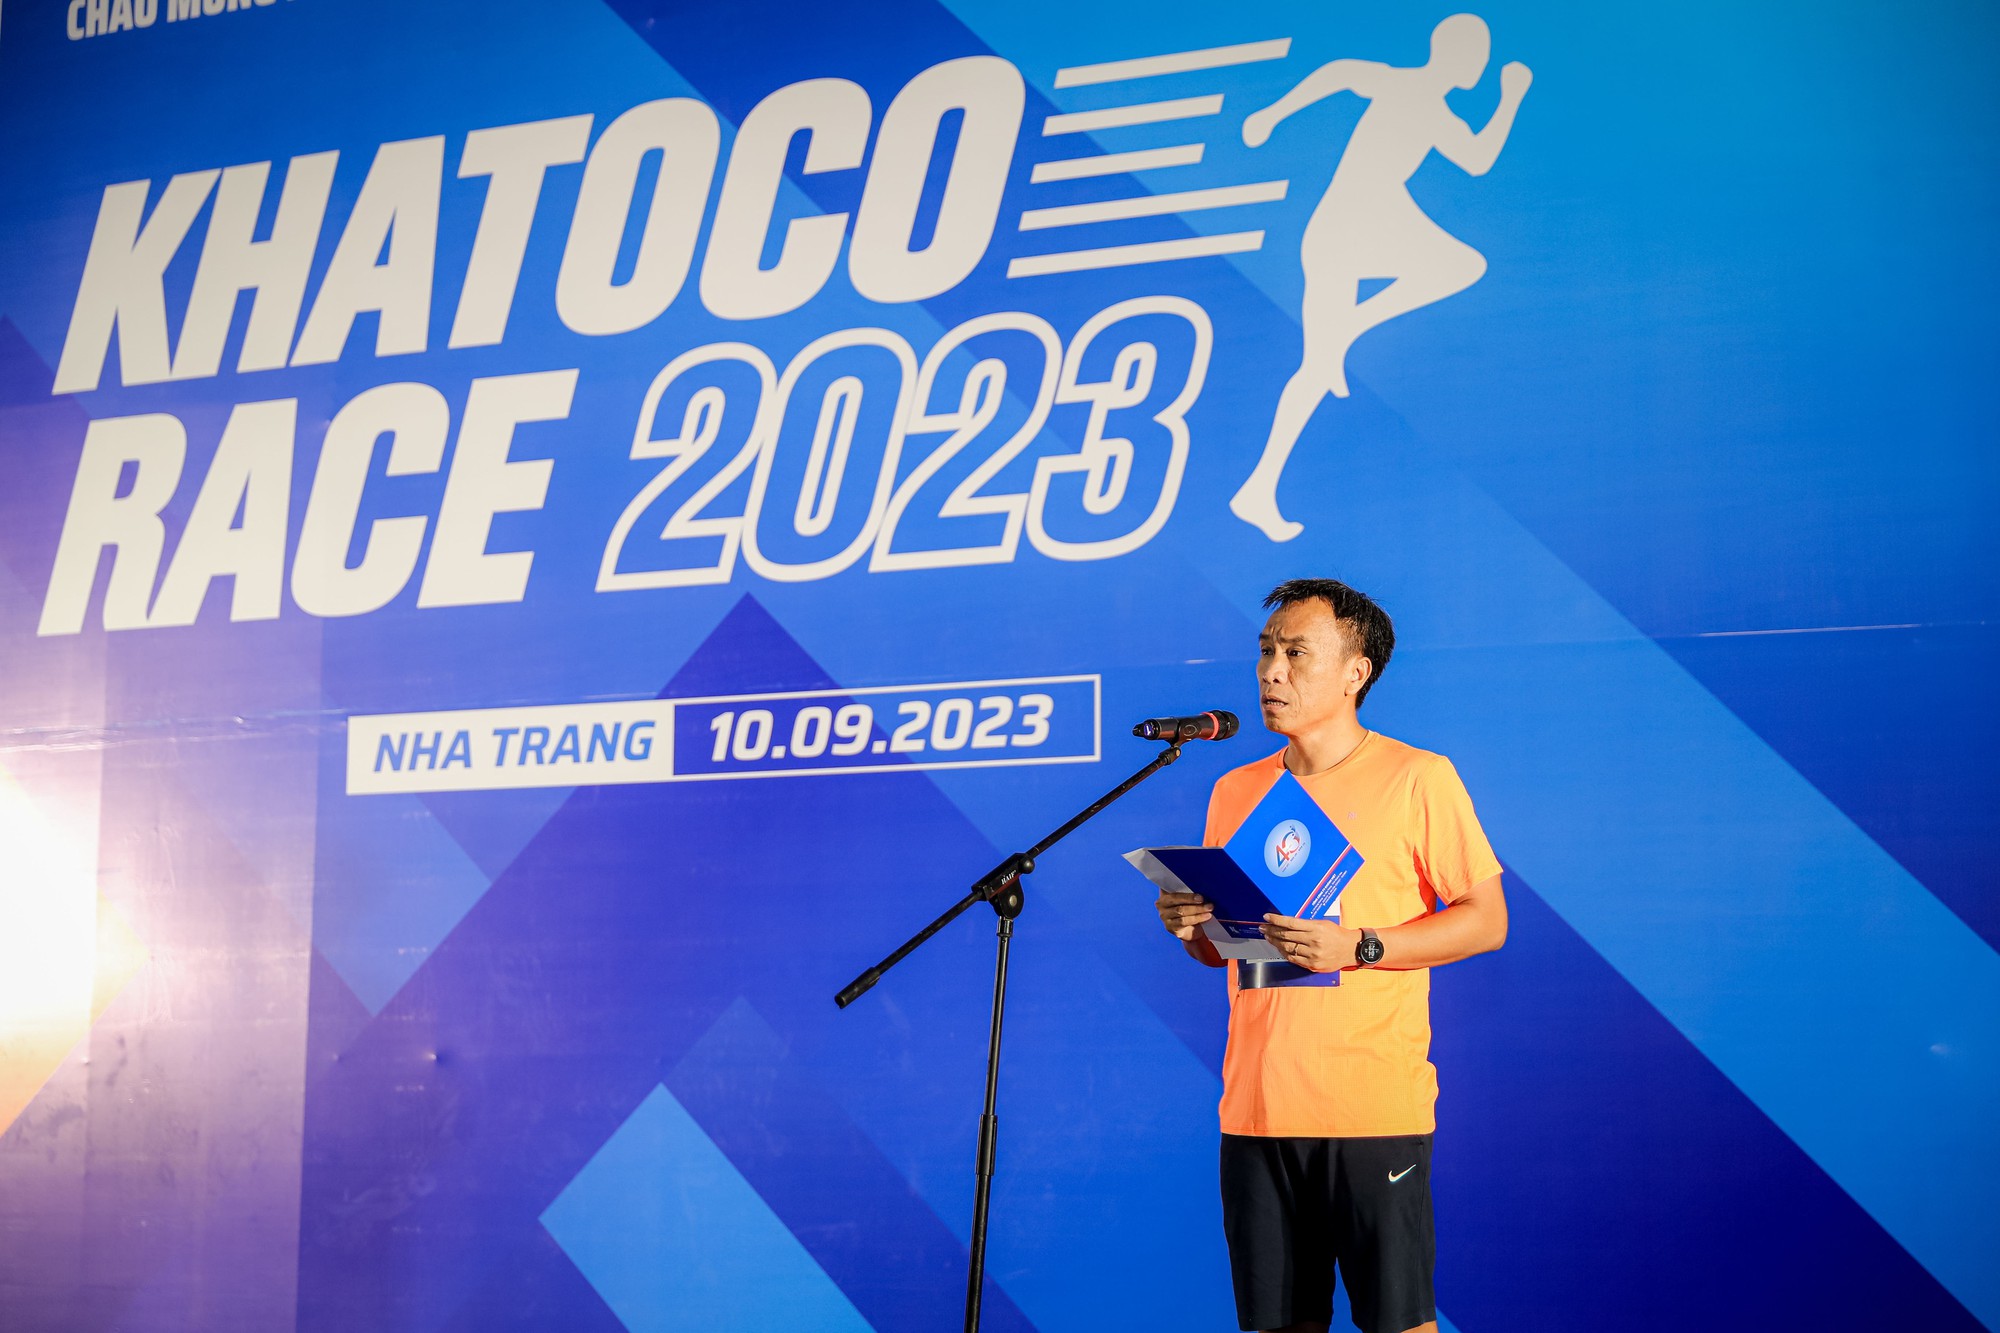 Giải chạy Khatoco Race 2023 thu hút hơn 1.300 vận động viên - Ảnh 1.